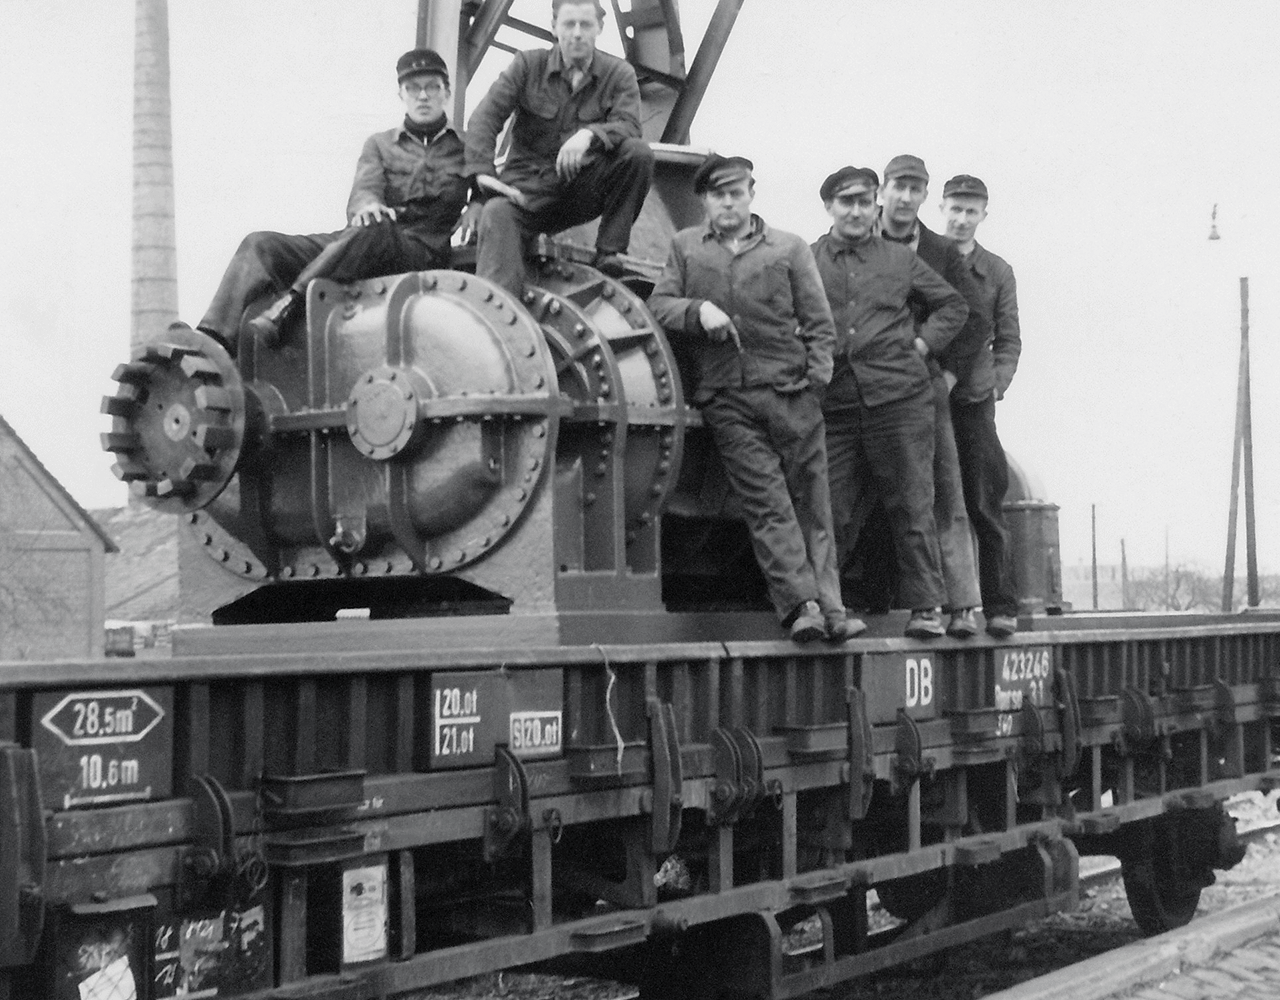 Obrázok zamestnancov sediacich na objemovom dúchadle, ktoré sa odosielalo do Berlína po železničnej trati